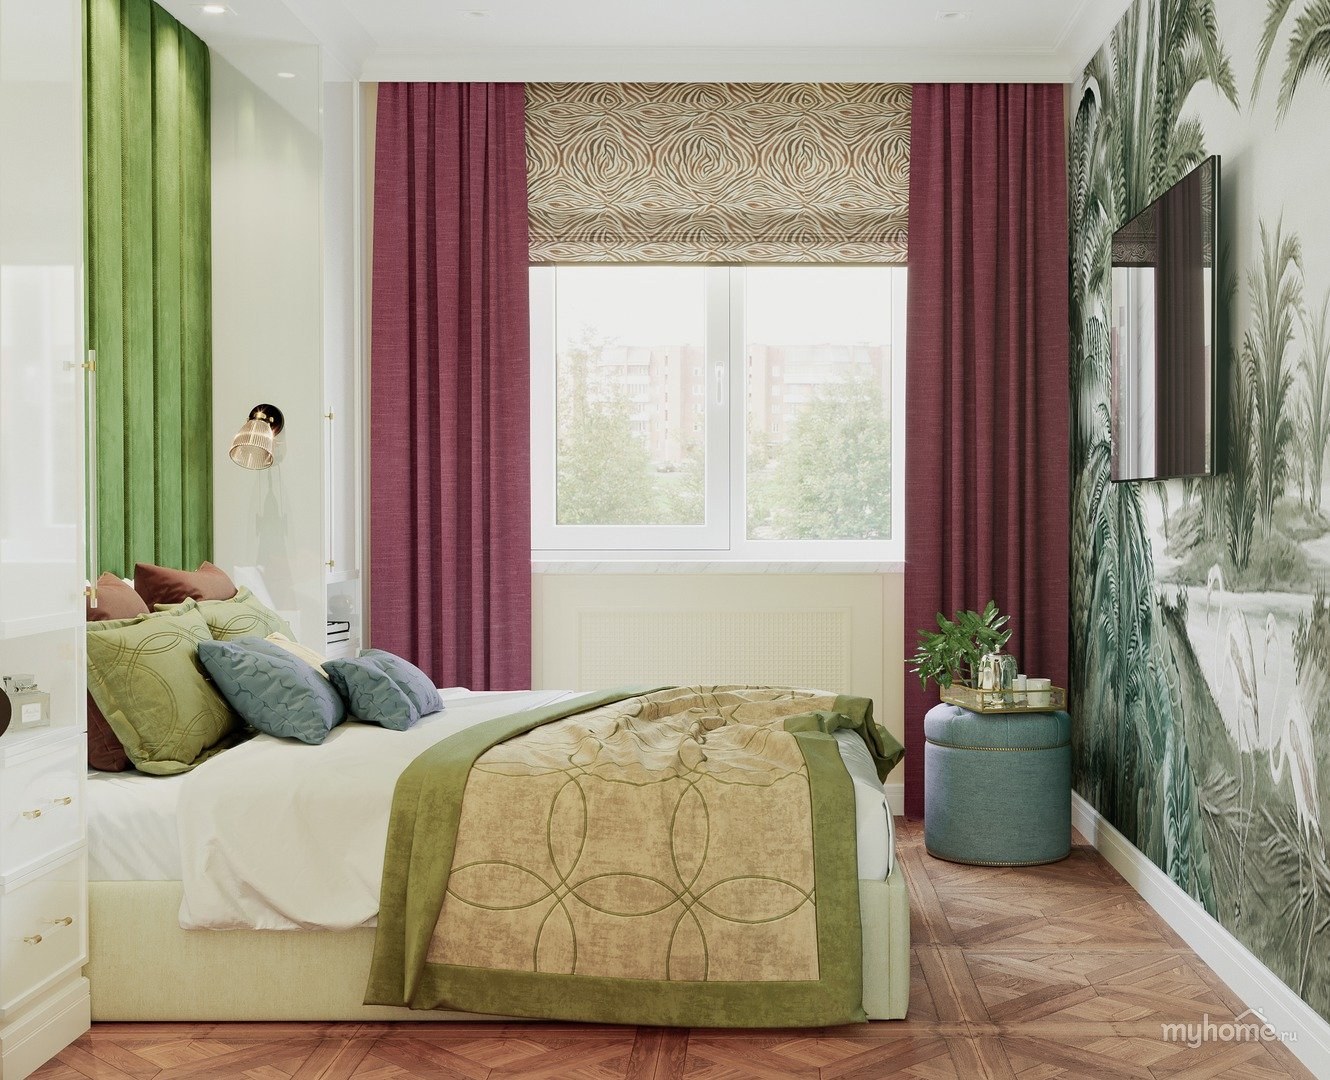 Спальня в бежево зеленых тонах